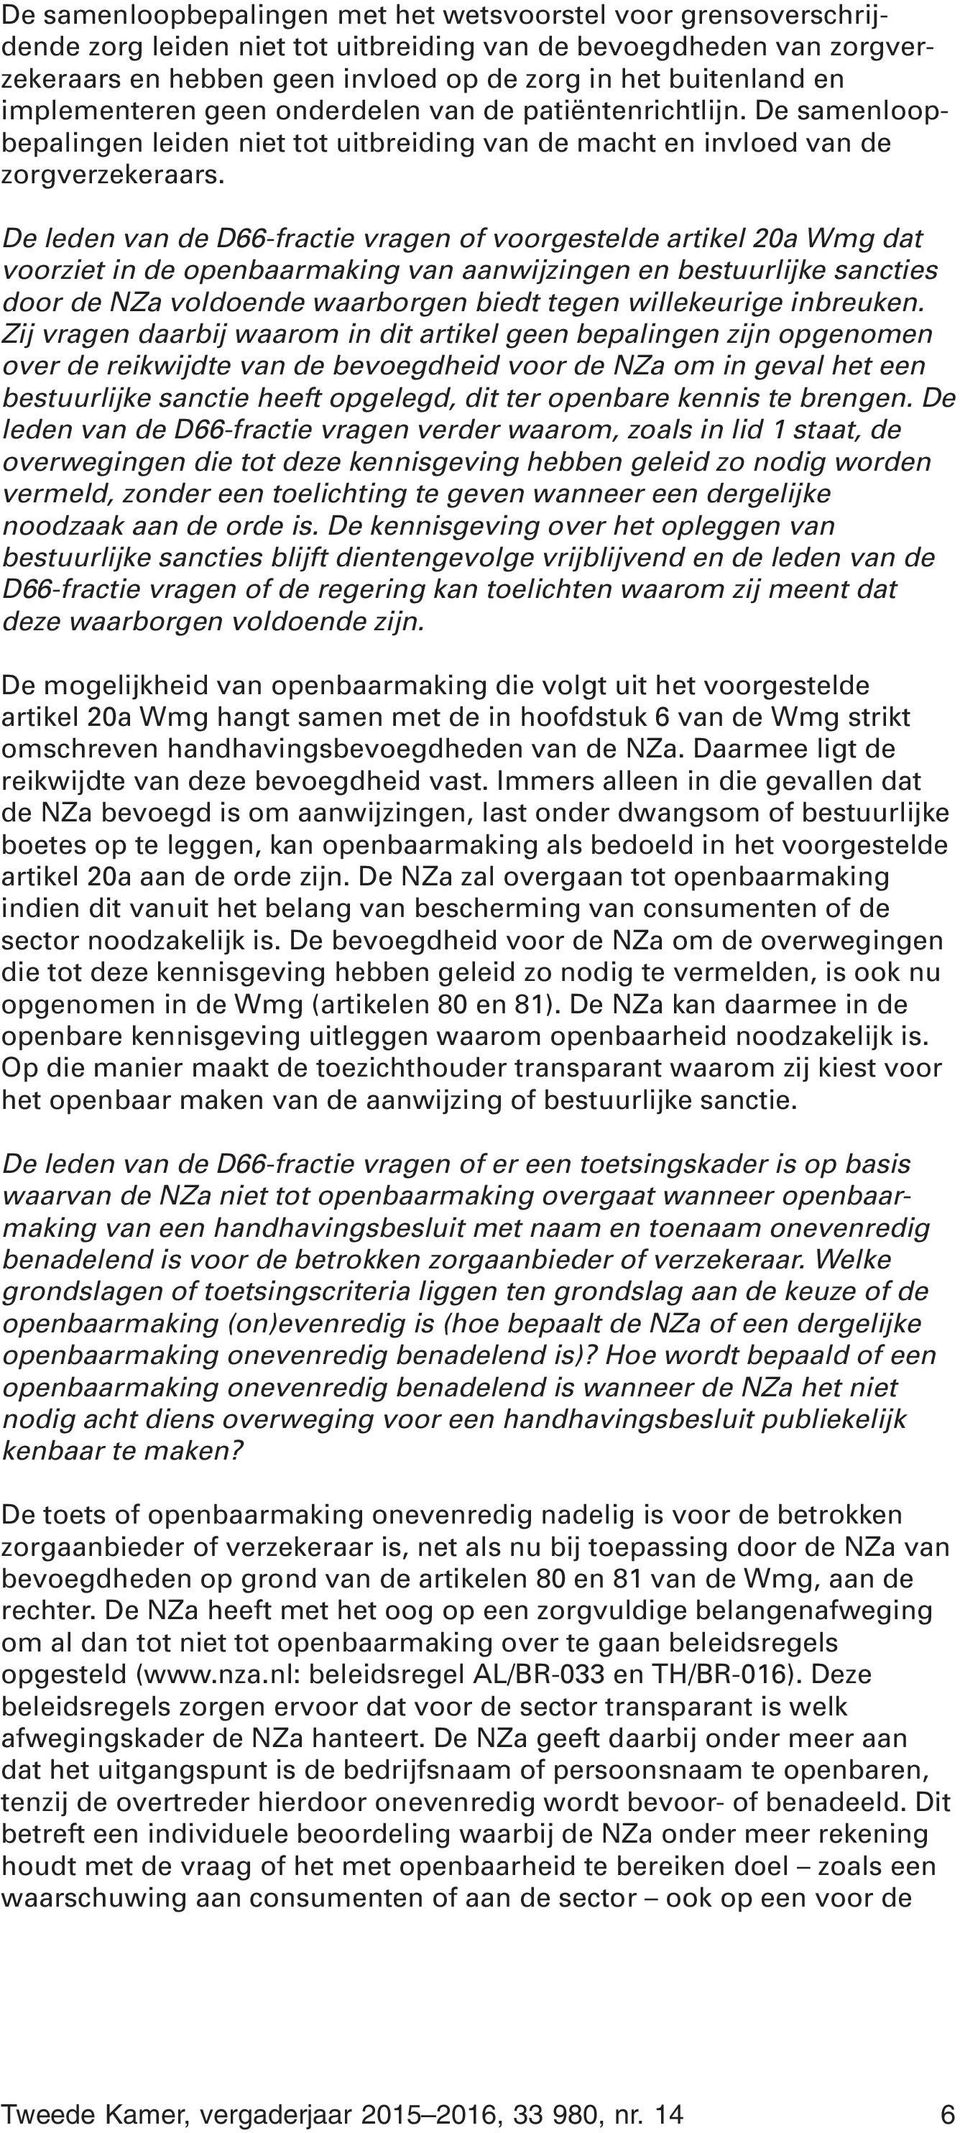 De leden van de D66-fractie vragen of voorgestelde artikel 20a Wmg dat voorziet in de openbaarmaking van aanwijzingen en bestuurlijke sancties door de NZa voldoende waarborgen biedt tegen